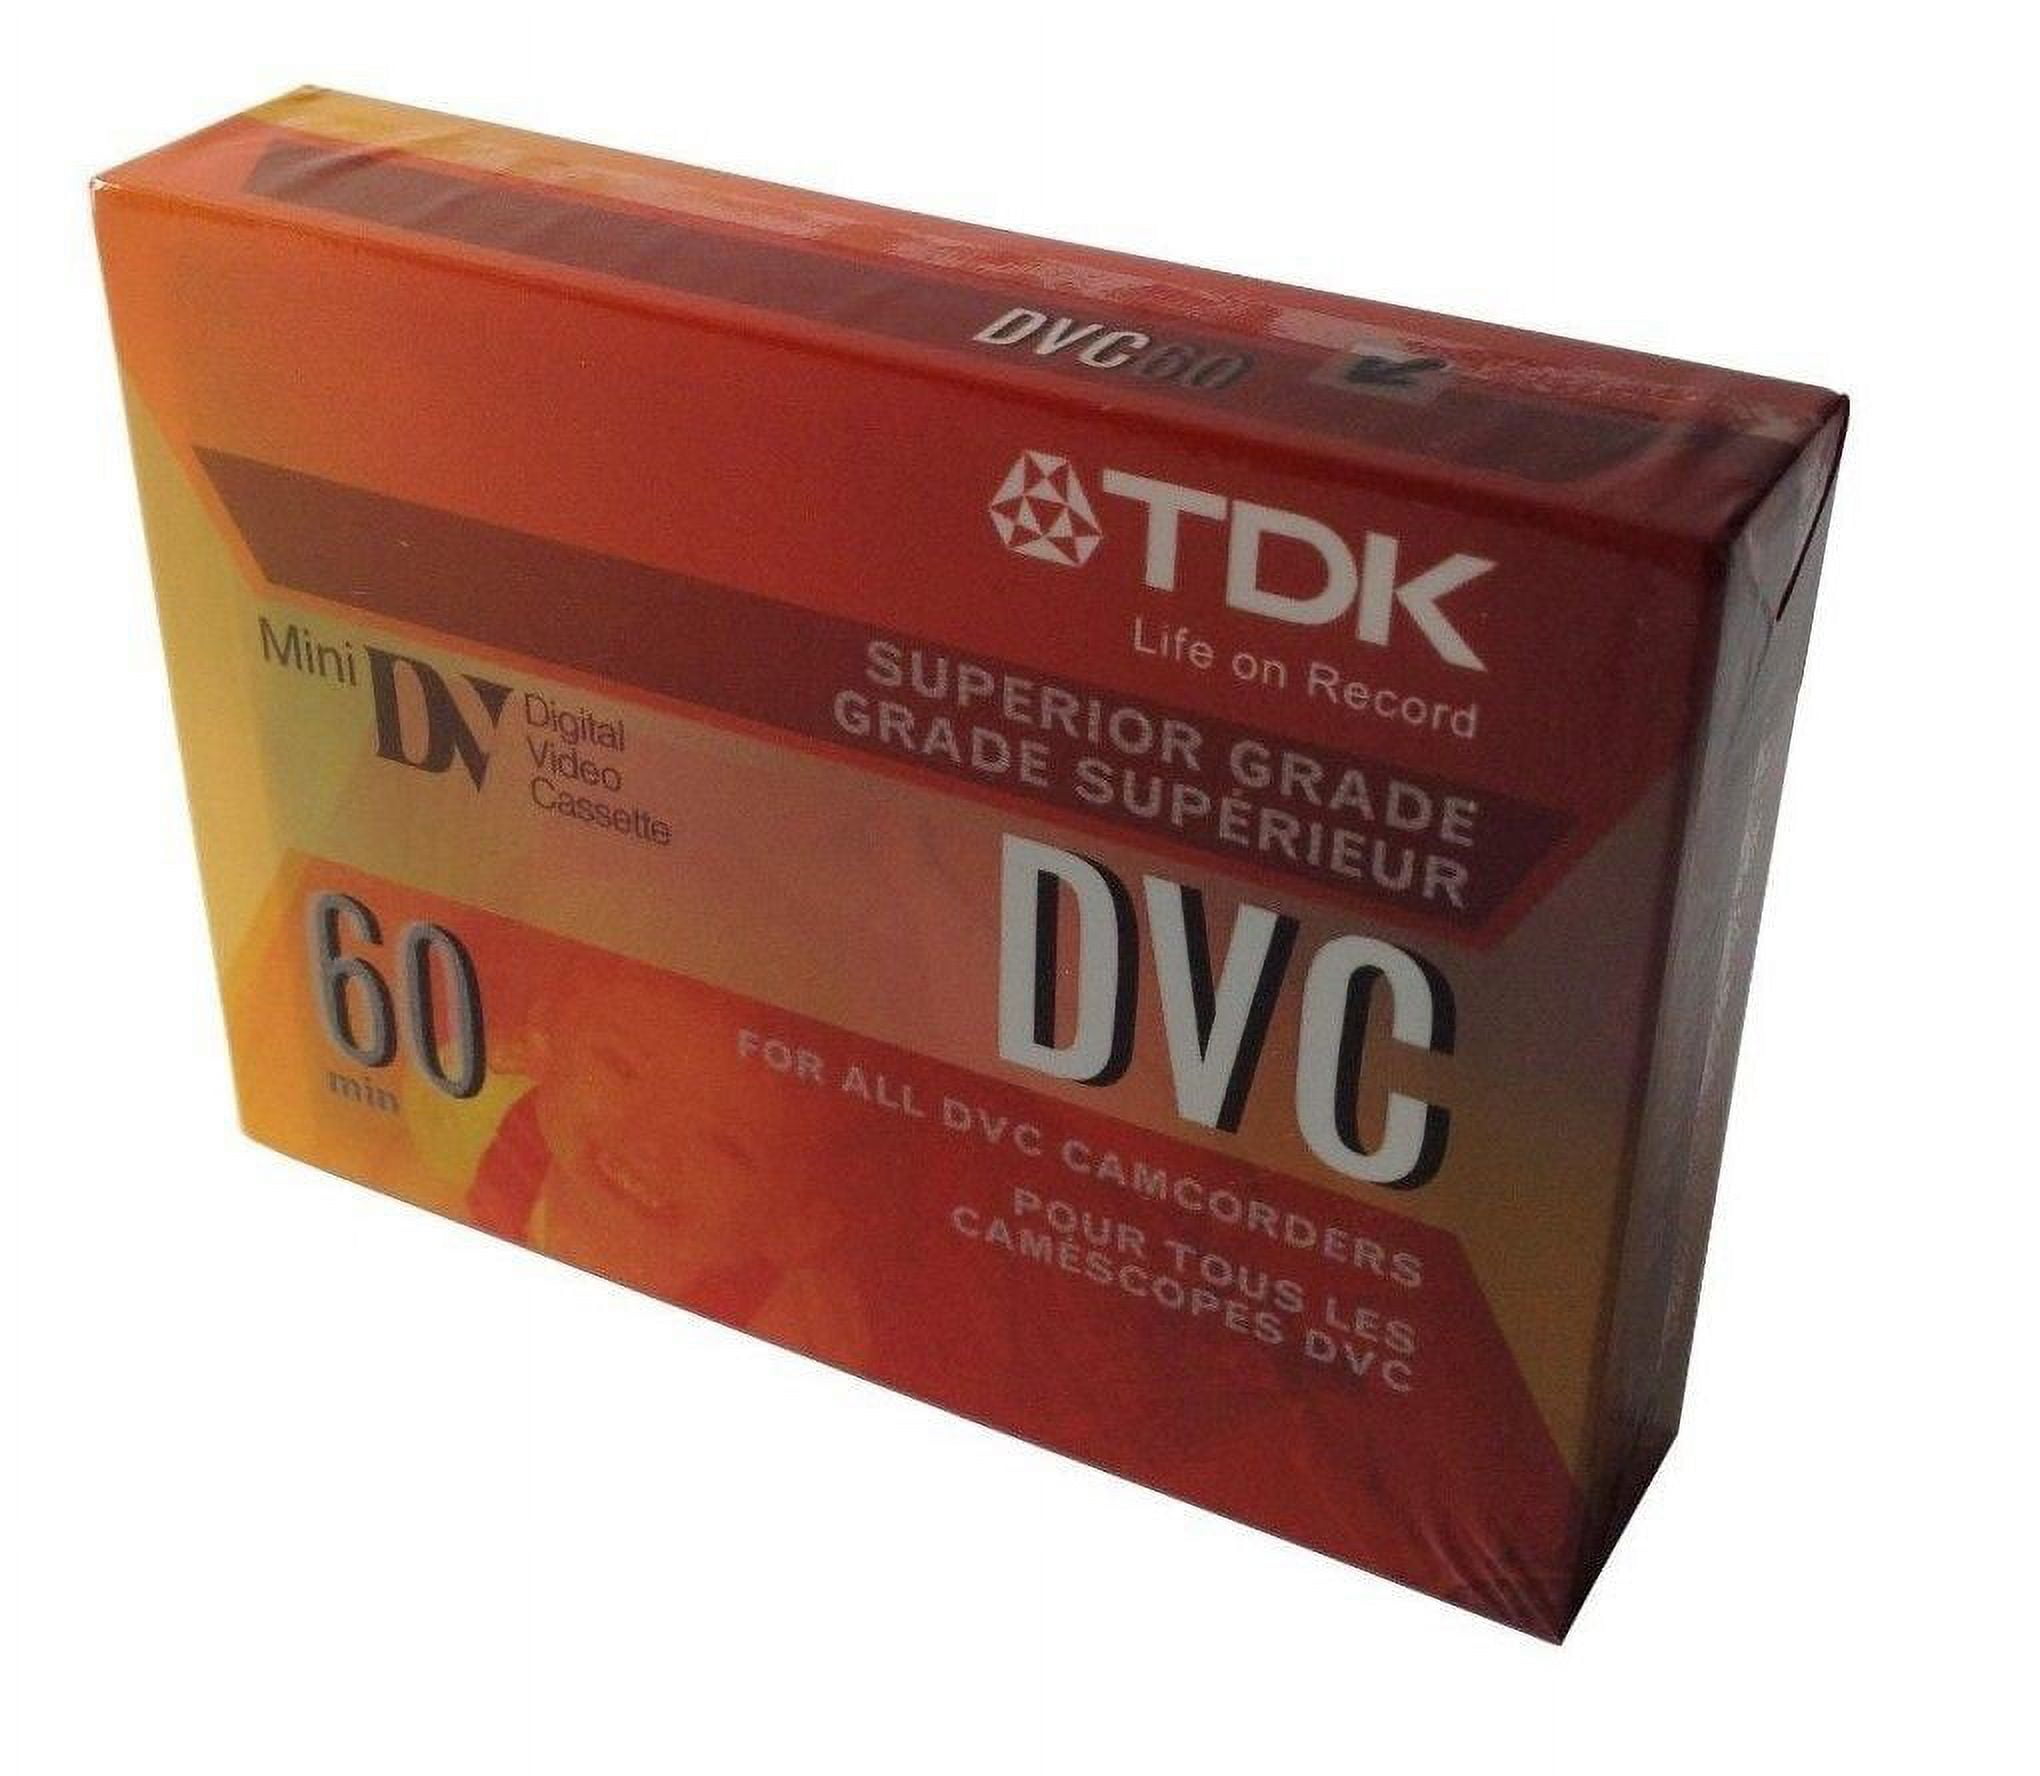 OPEN BOX Mini DV 60 Cassette Tape By Fuji, TDK or Panasonic